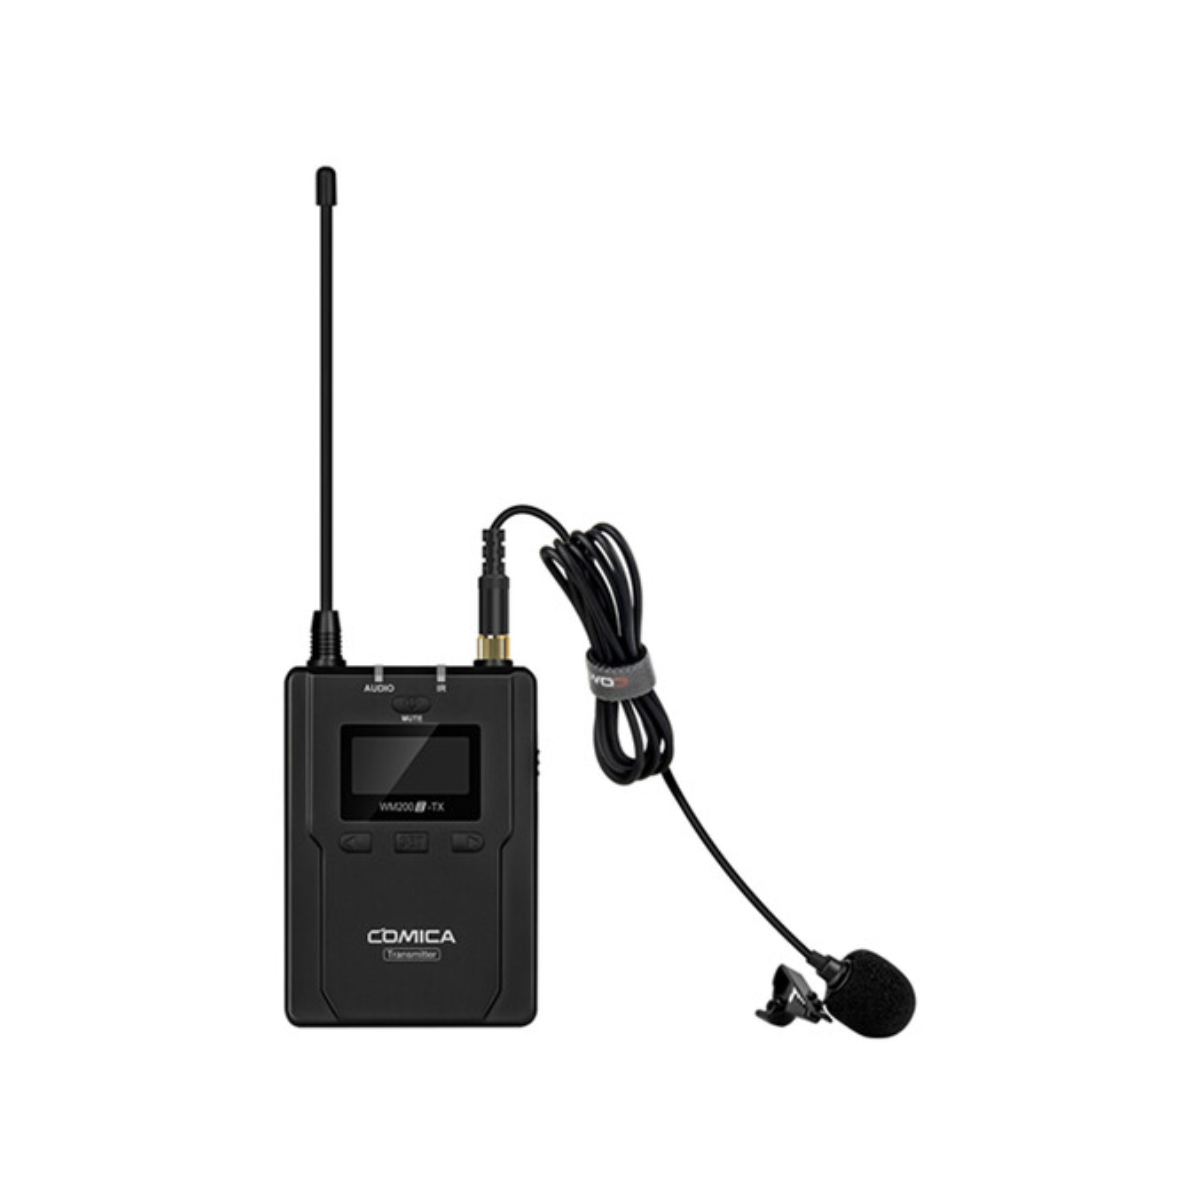 Acheter Microphone Lavalier sans fil UHF, émetteurs et récepteurs de micro  Lavalier sans fil avec Clip